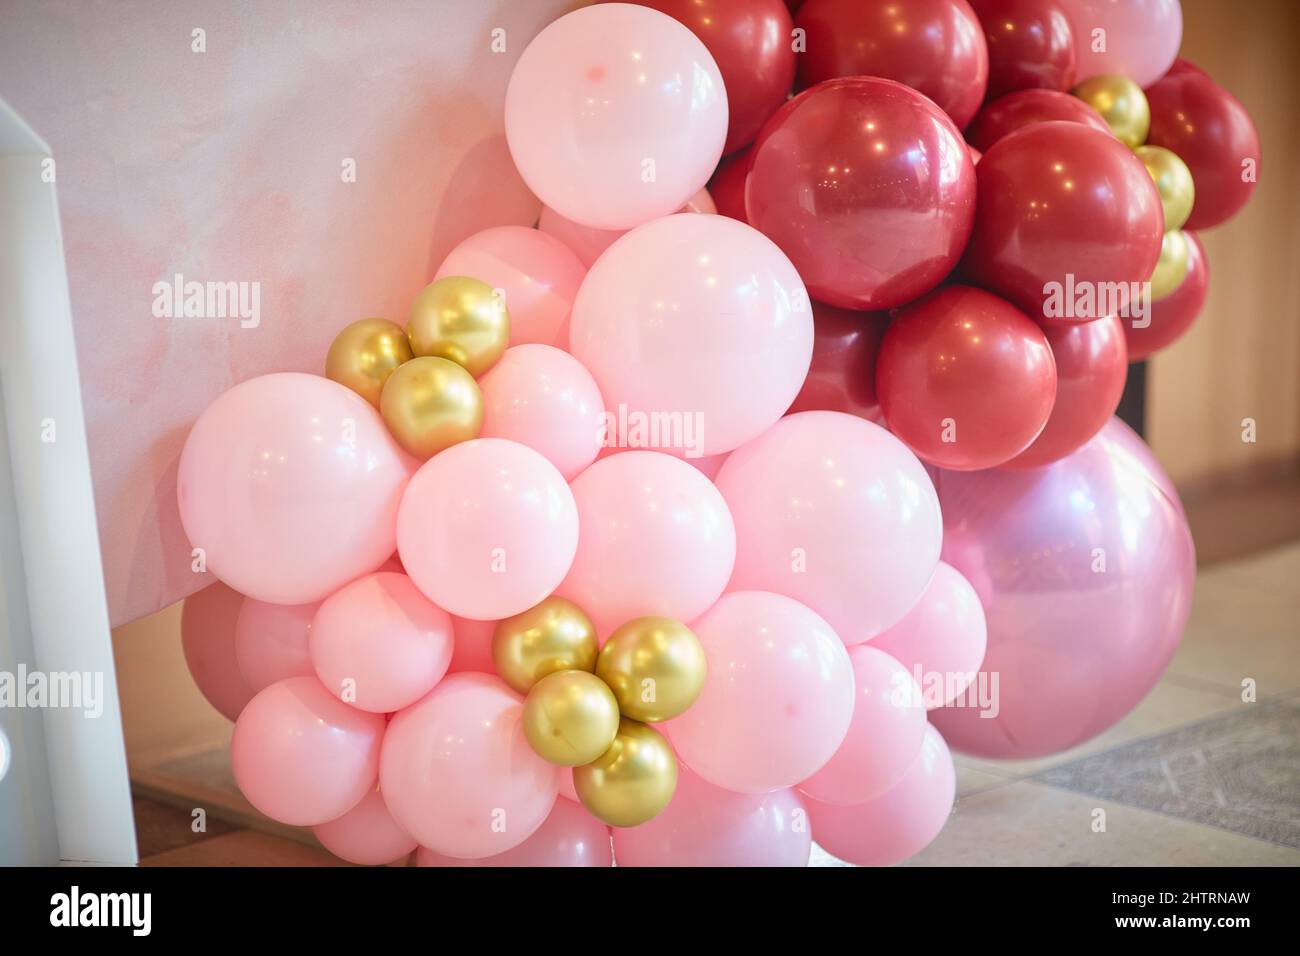 aerodesign. palloncini rosa piccoli fissati insieme. Elementi decorativi per il compleanno dei bambini Foto Stock